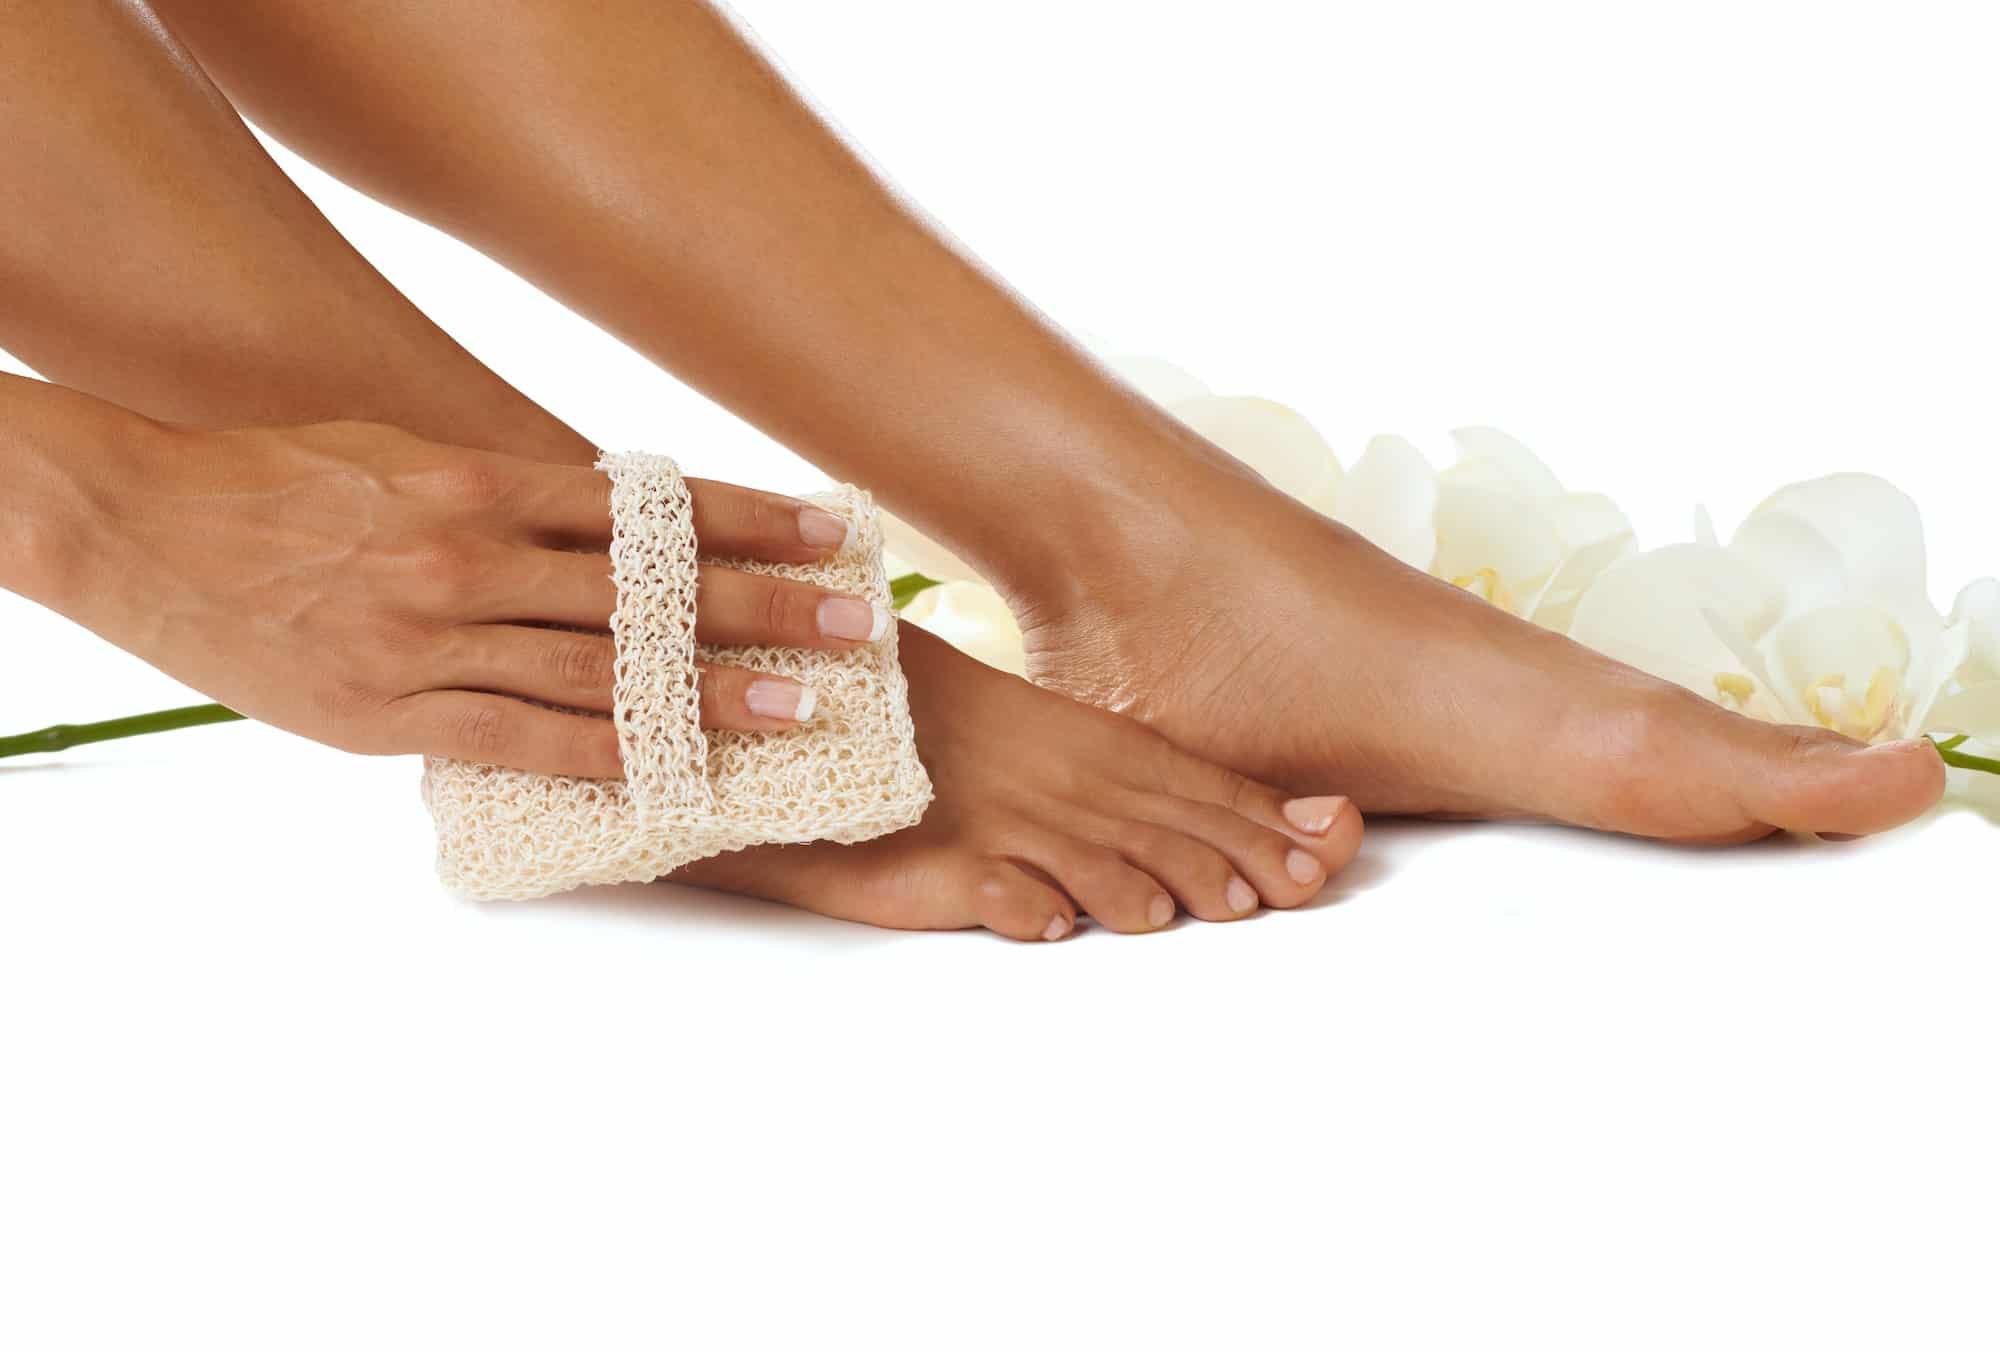 Quelles sont les meilleures raisons de soigner le pied ?